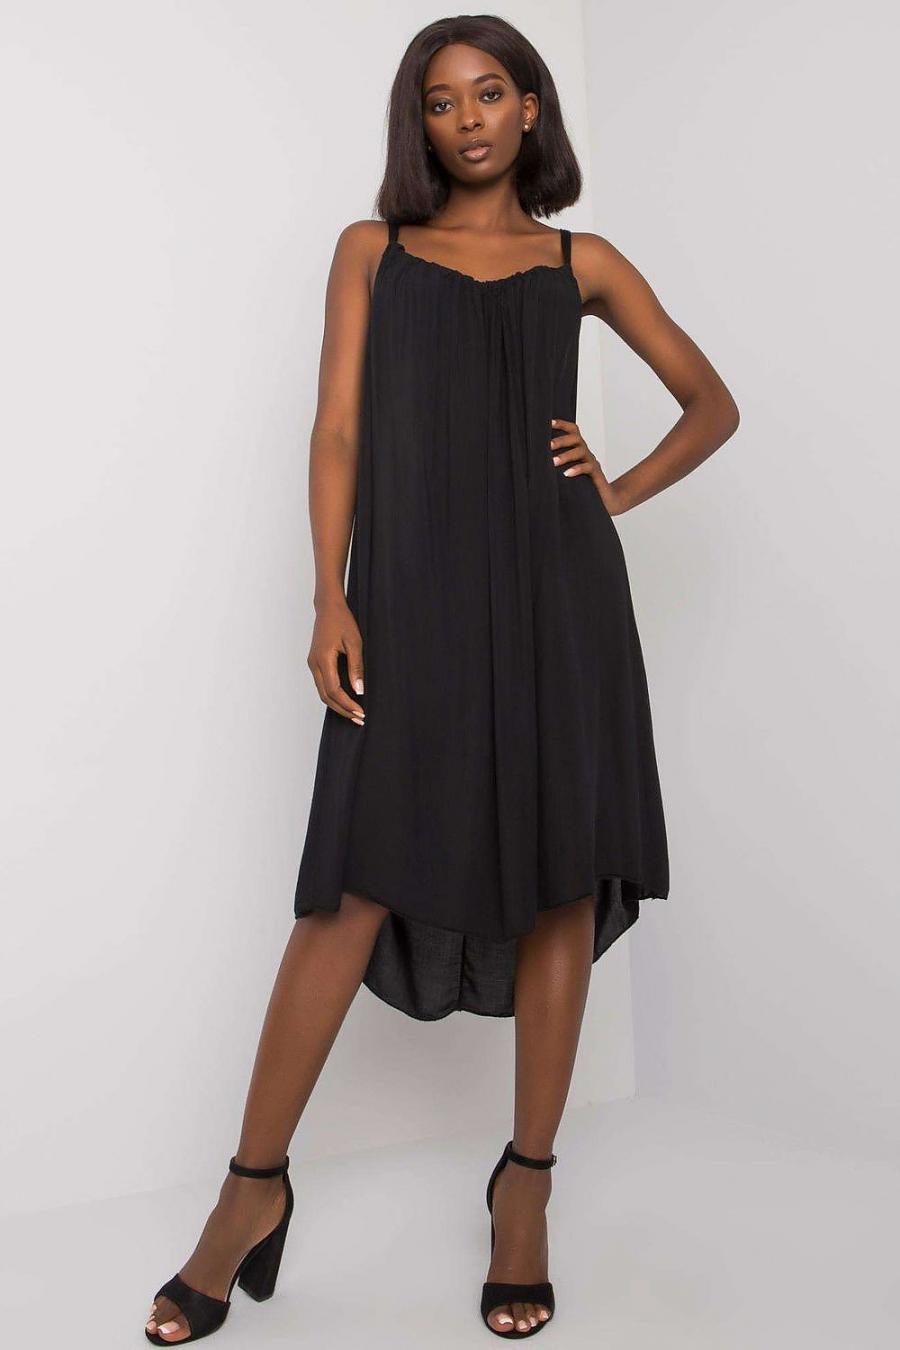 Ostatní značky šaty dámské 165036 - černá - velikost M